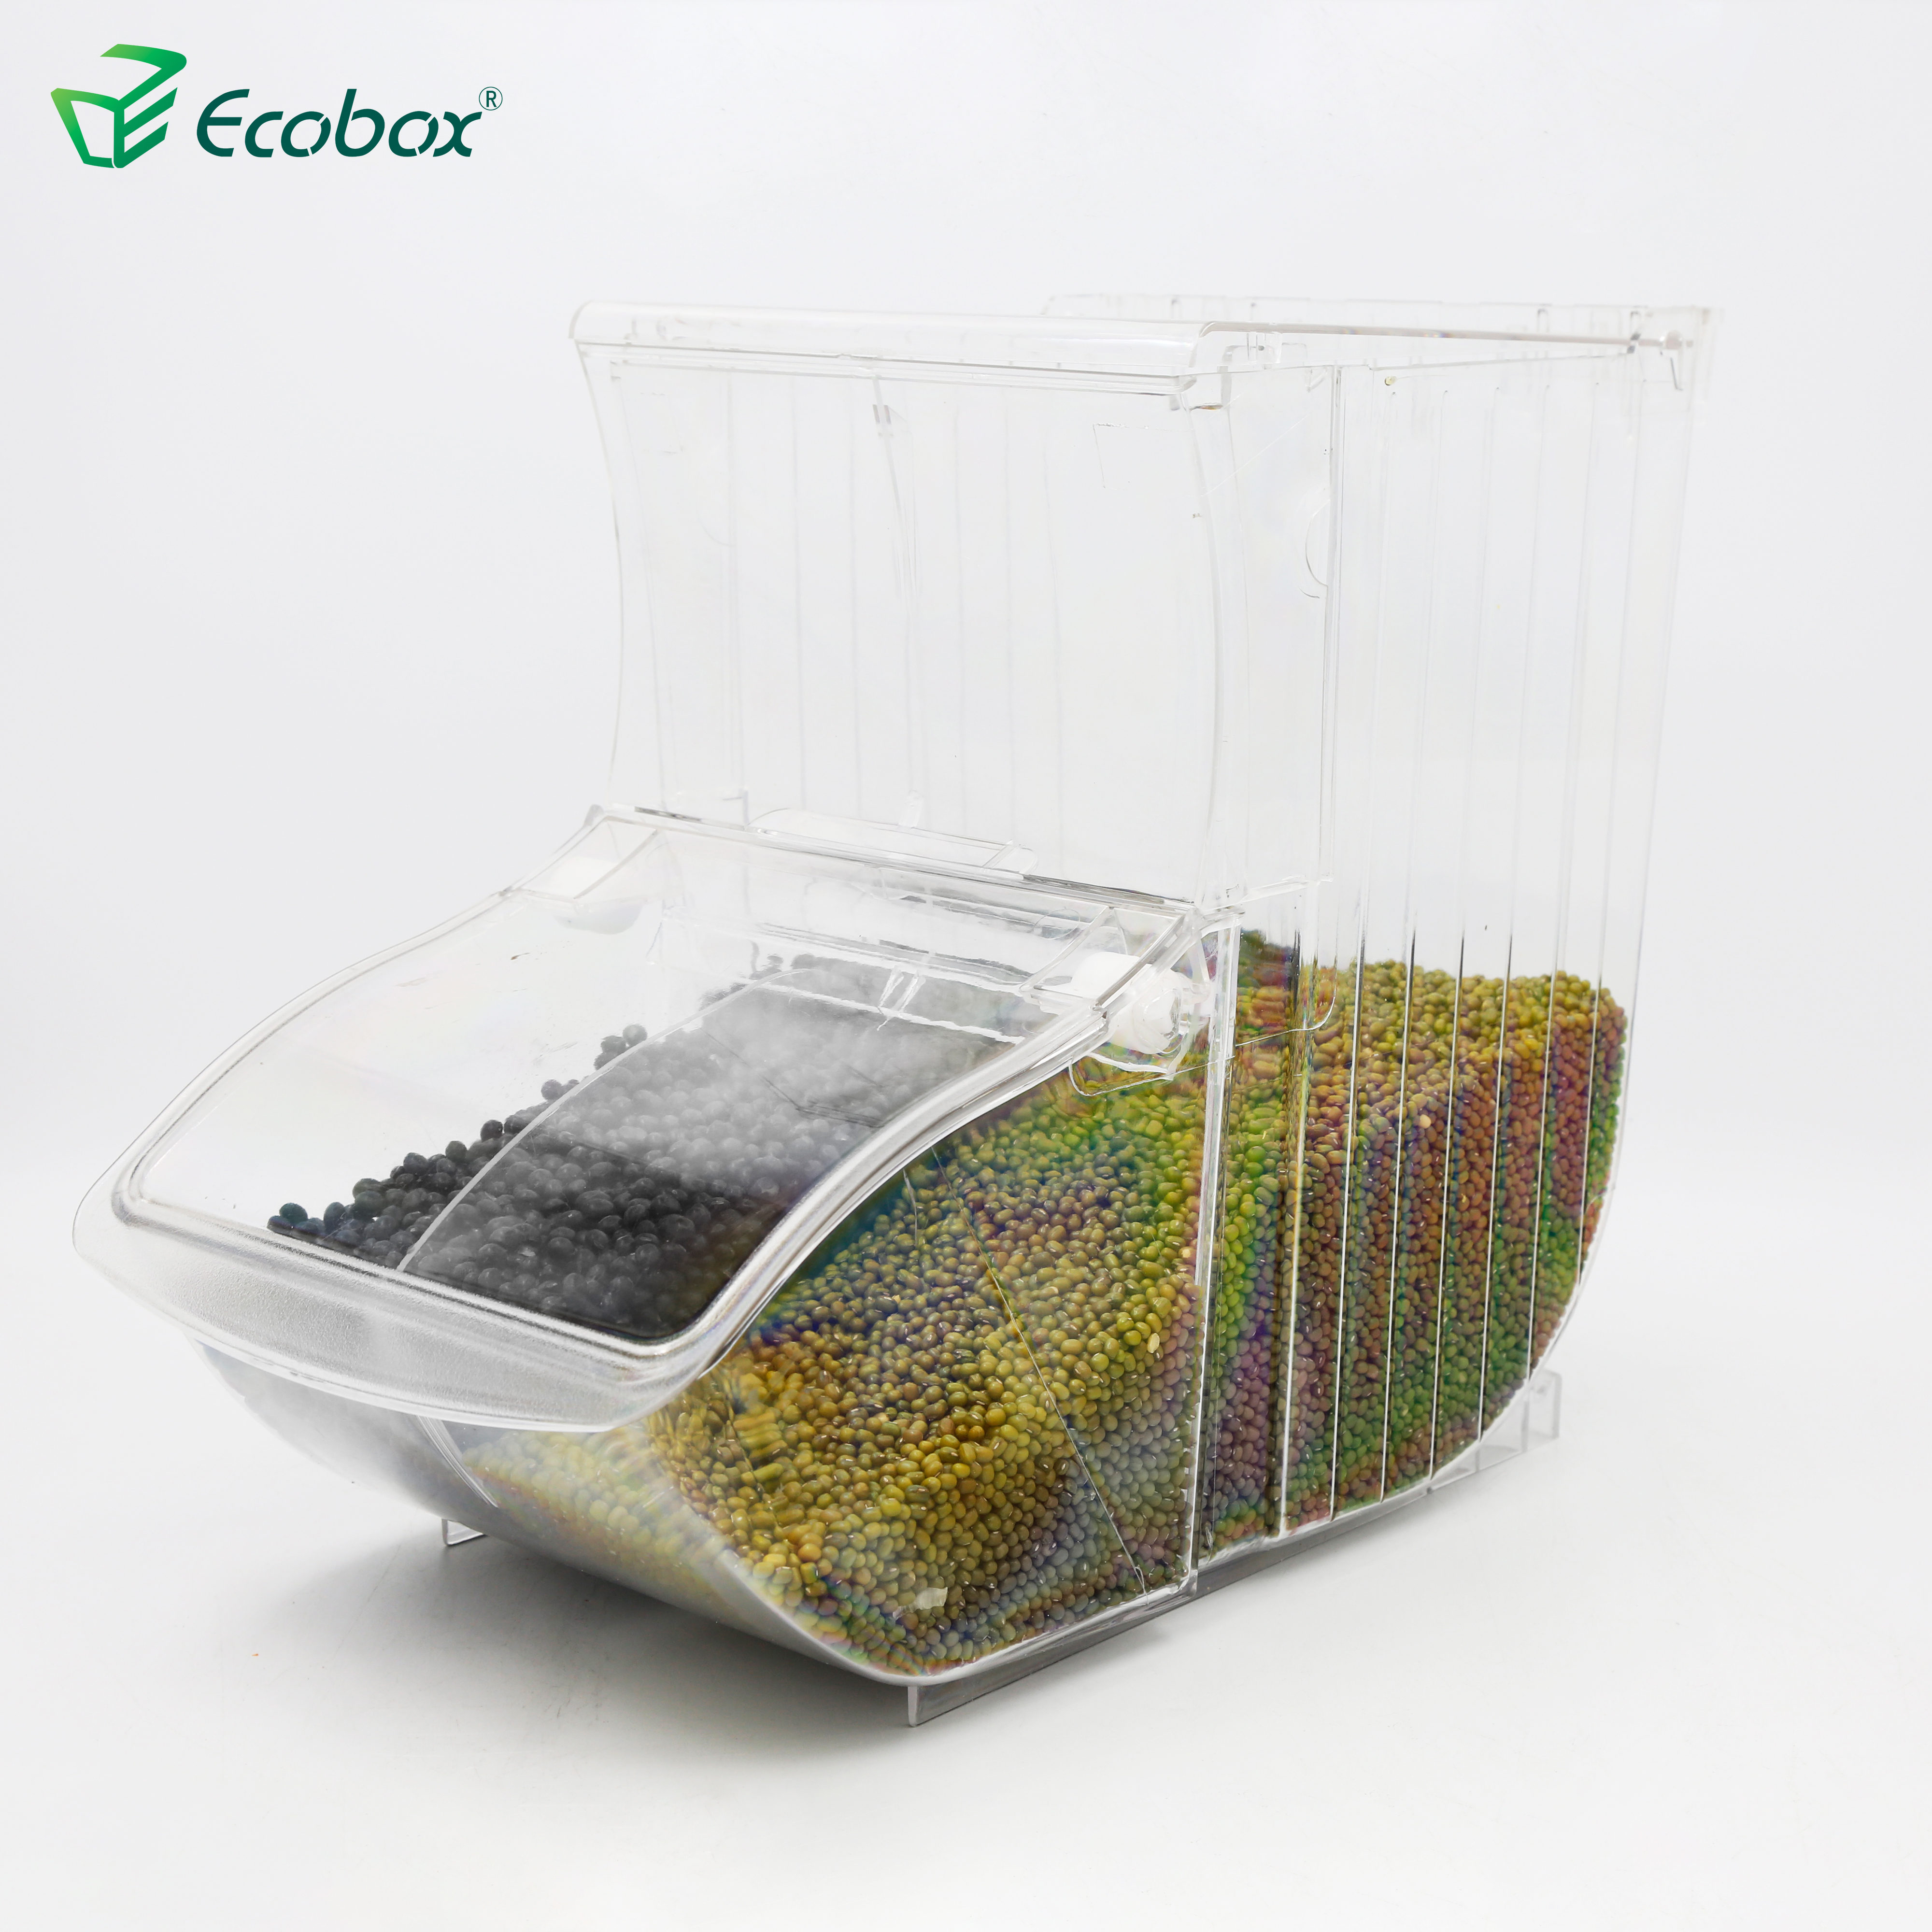 Ecobox SPH-003 de la cucharada de bin